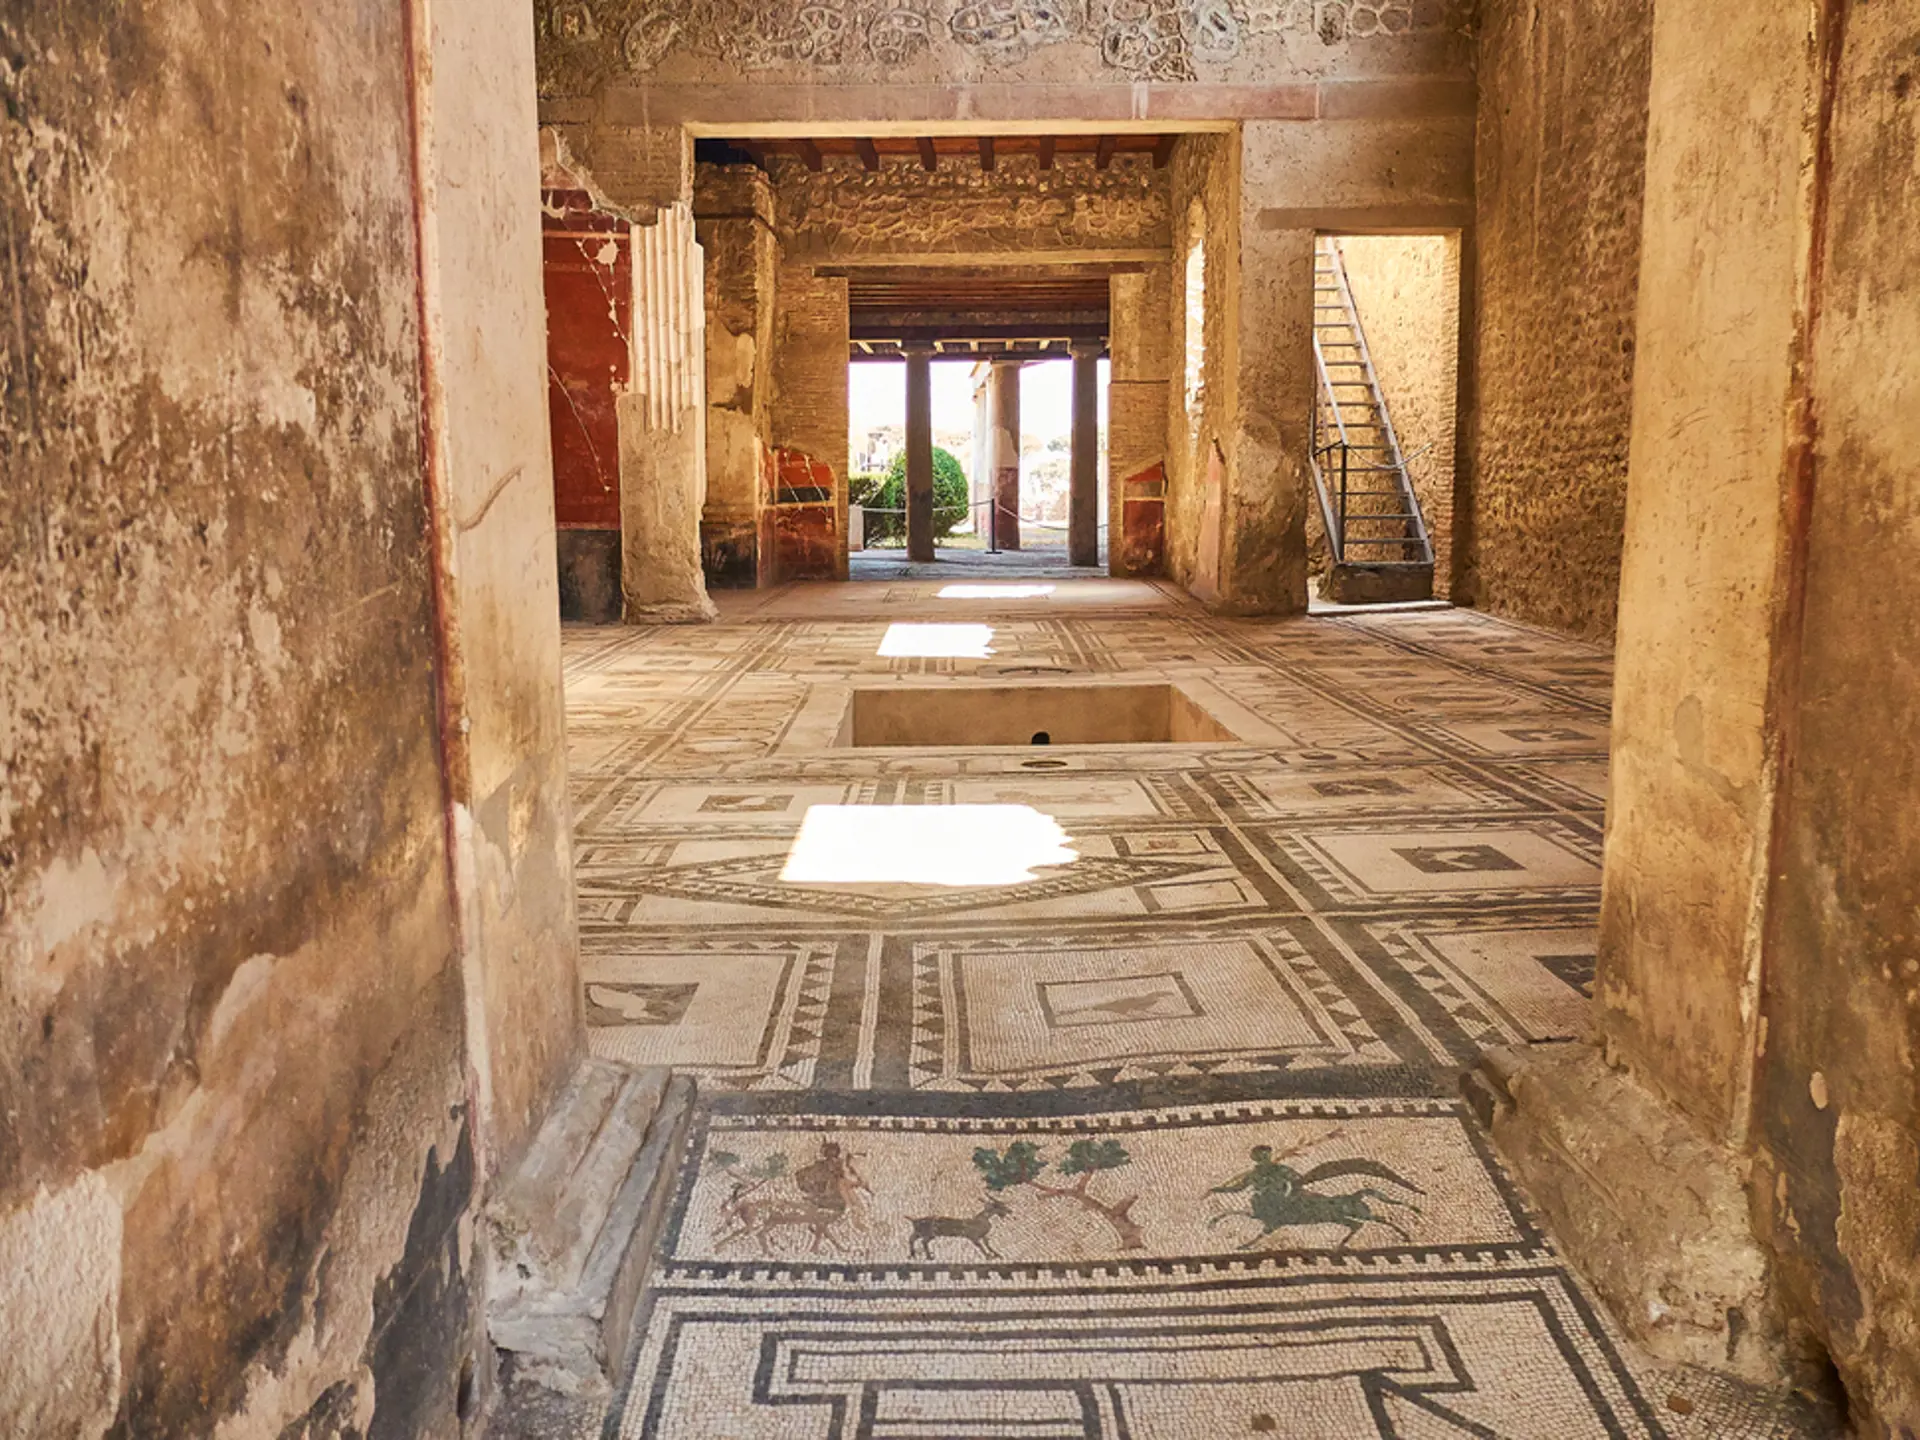 Udsnit af et mosaikgulv i en gammel romersk villa i Pompei